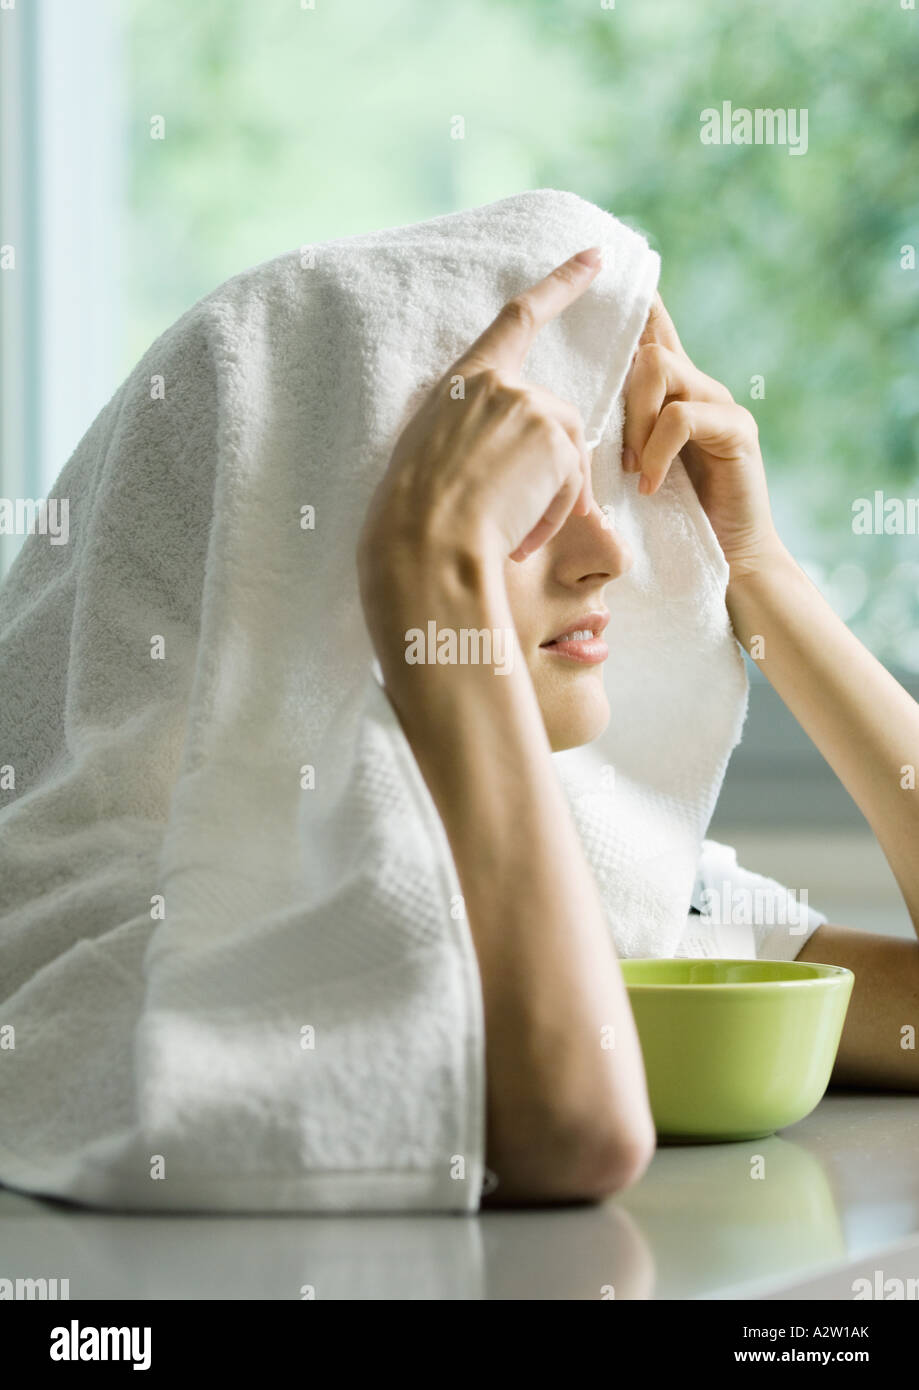 Frau mit Gesicht über Schüssel und Handtuch über Kopf Stockfotografie -  Alamy